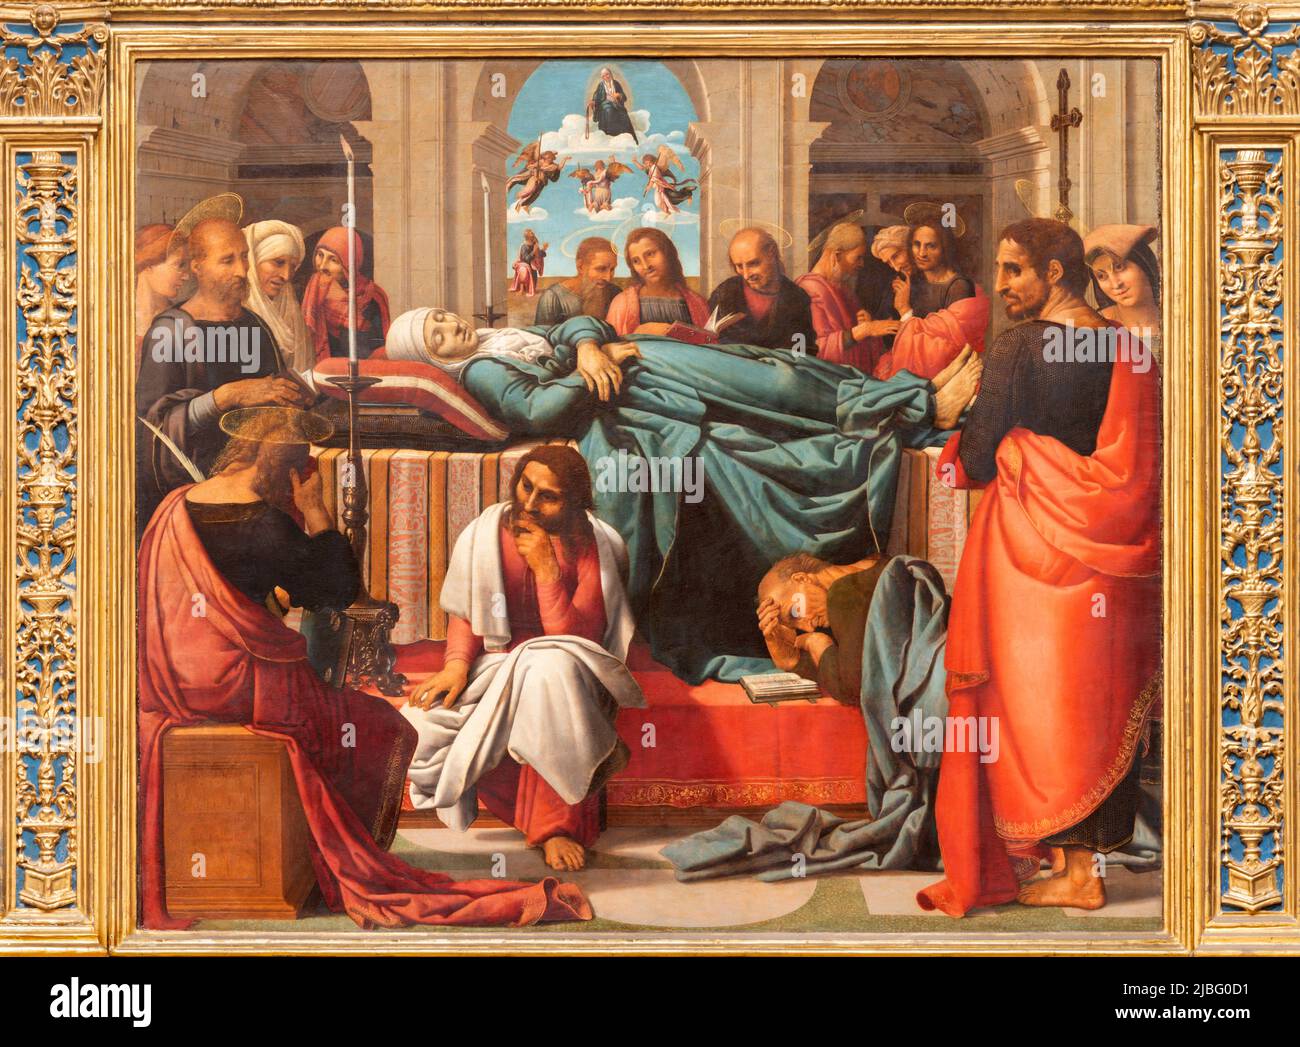 VALENCIA, SPANIEN - 14. FEBRUAR 2022: Das Gemälde auf dem Hauptaltar der Jungfrau Maria in der Kathedrale - Basilika der Himmelfahrt unserer Lieben Frau Stockfoto